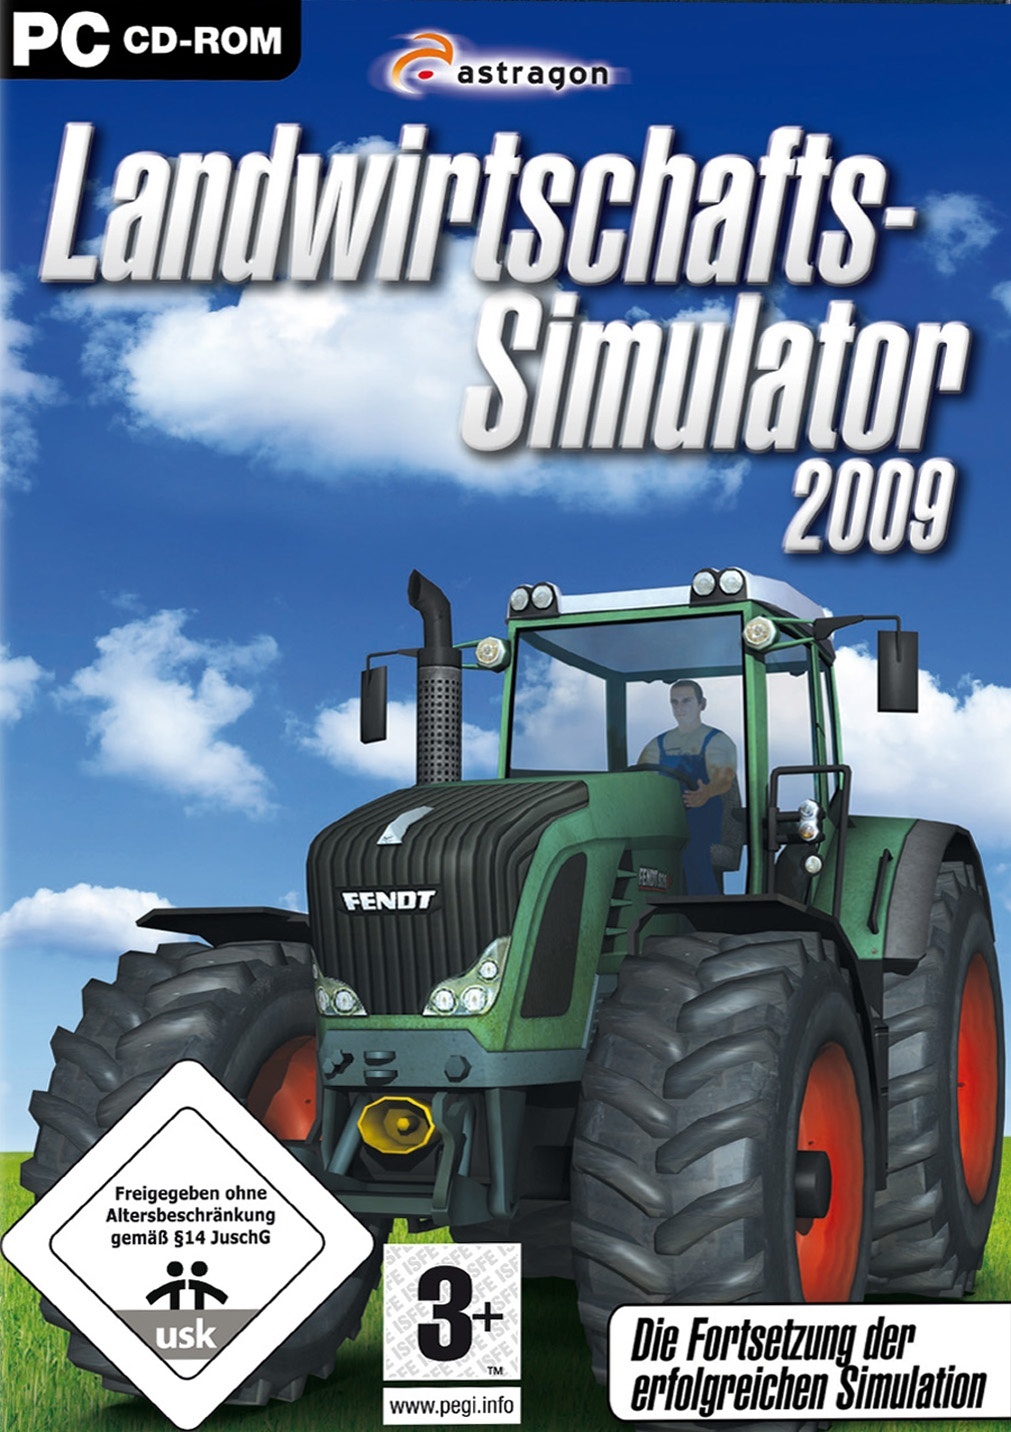 Landwirtschafts-Simulator 22 (PC): Test, News, Video, Spieletipps, Bilder